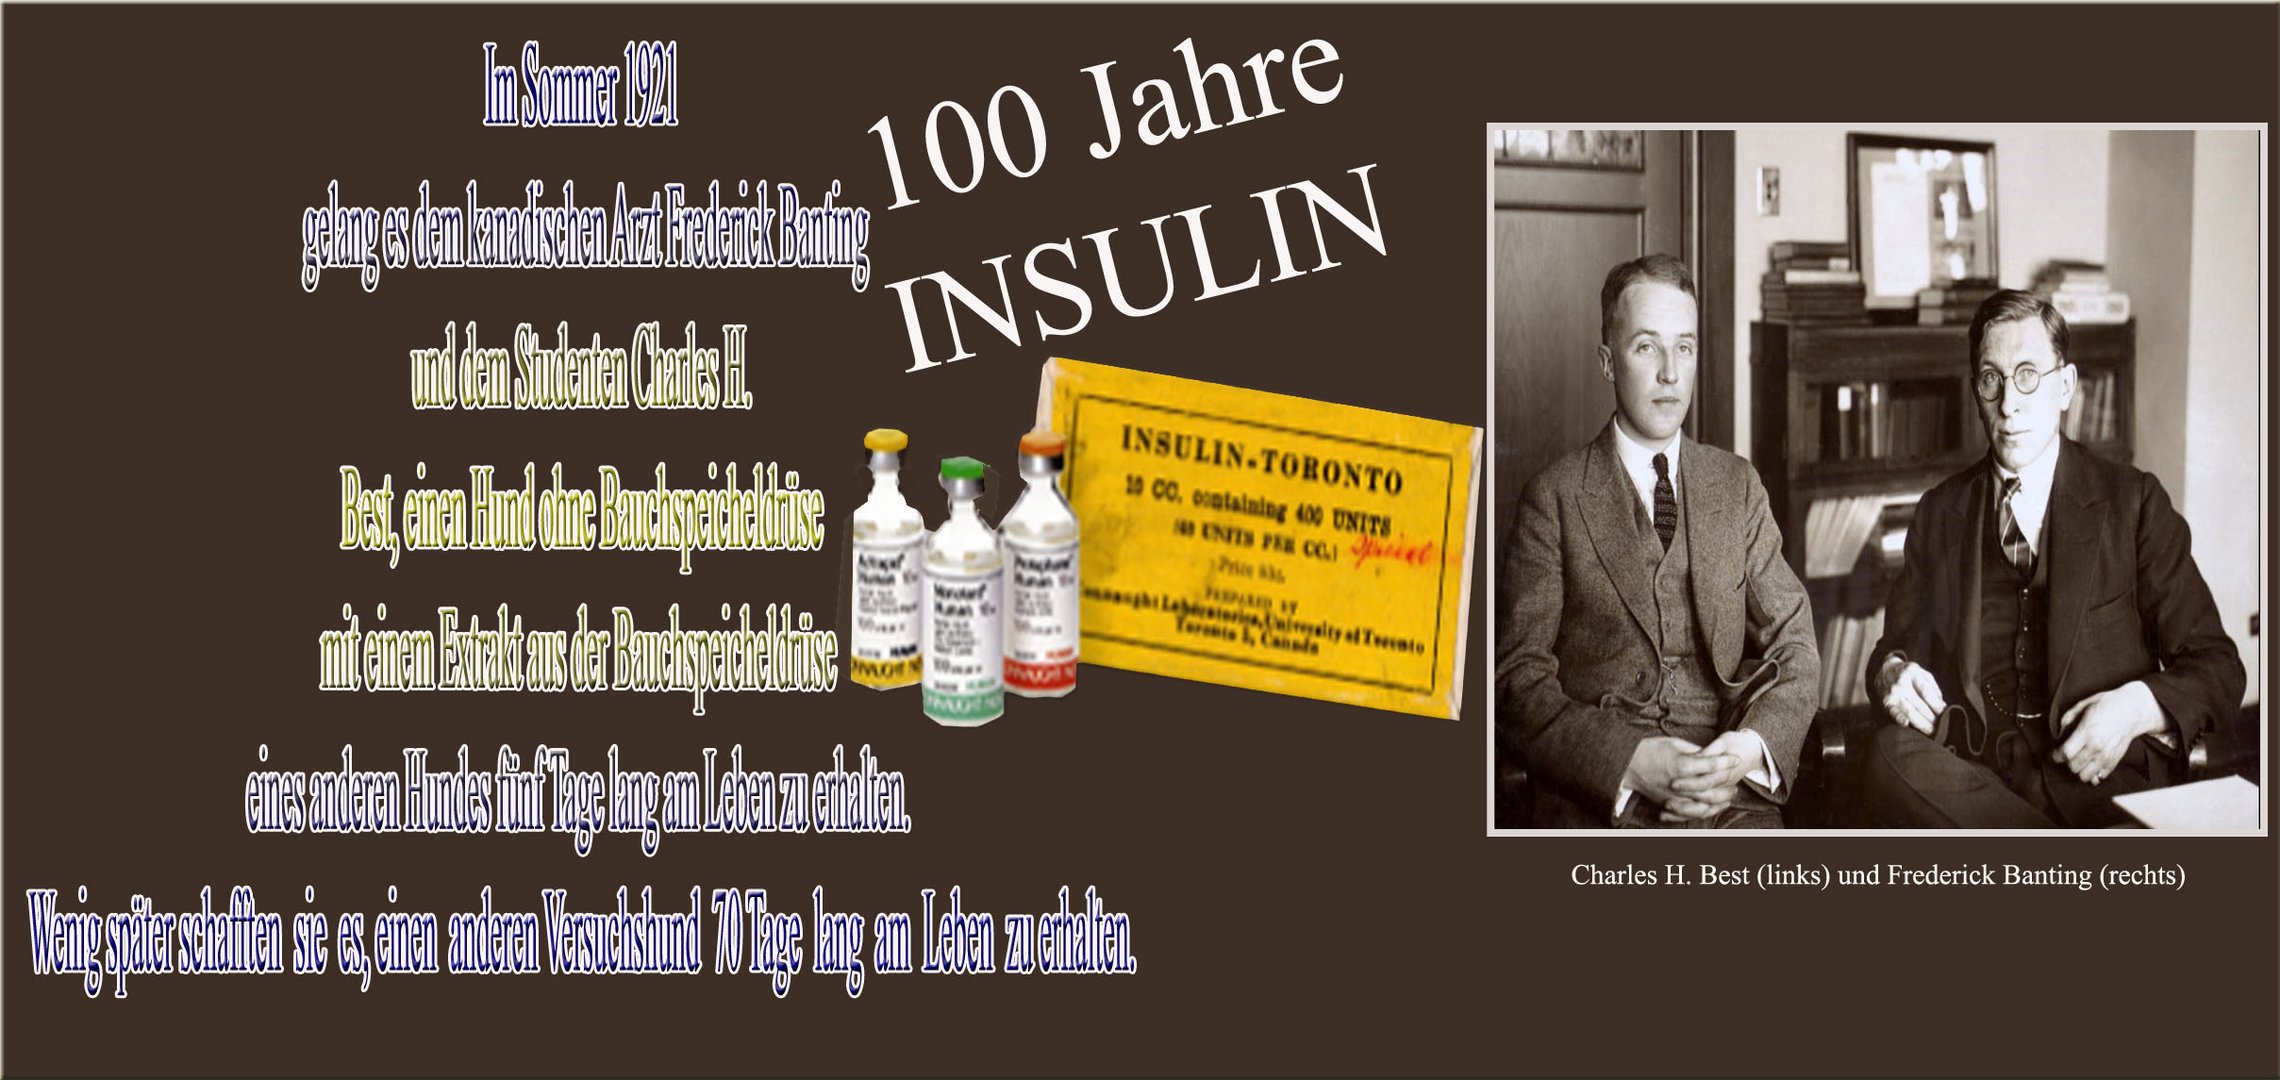 100 jahre Insulin 